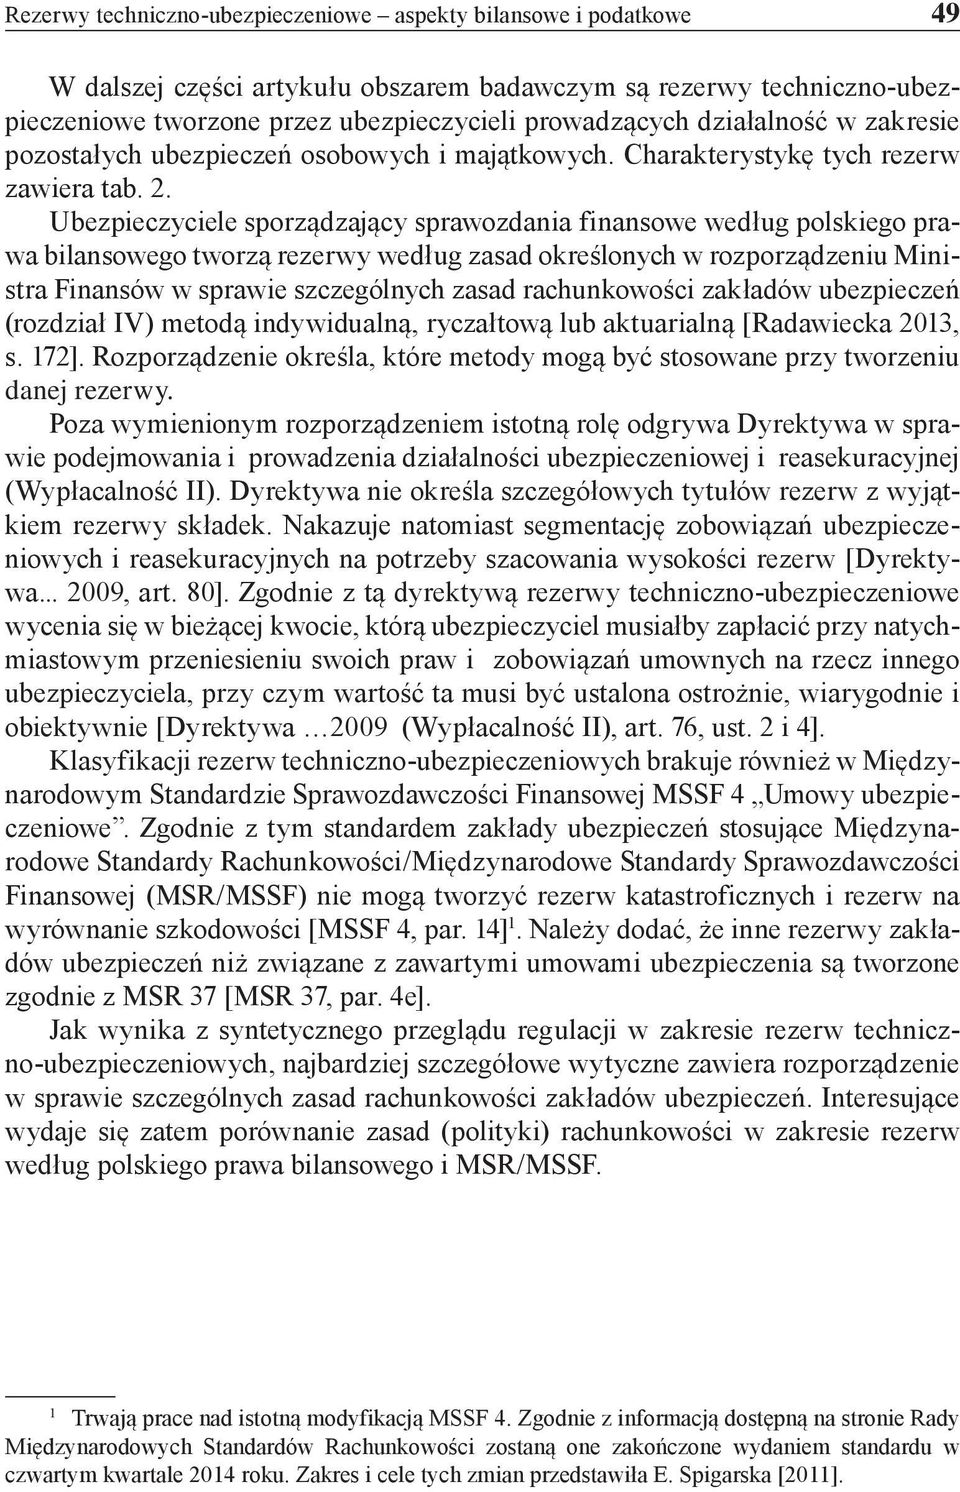 Ubezpieczyciele sporządzający sprawozdania finansowe według polskiego prawa bilansowego tworzą rezerwy według zasad określonych w rozporządzeniu Ministra Finansów w sprawie szczególnych zasad